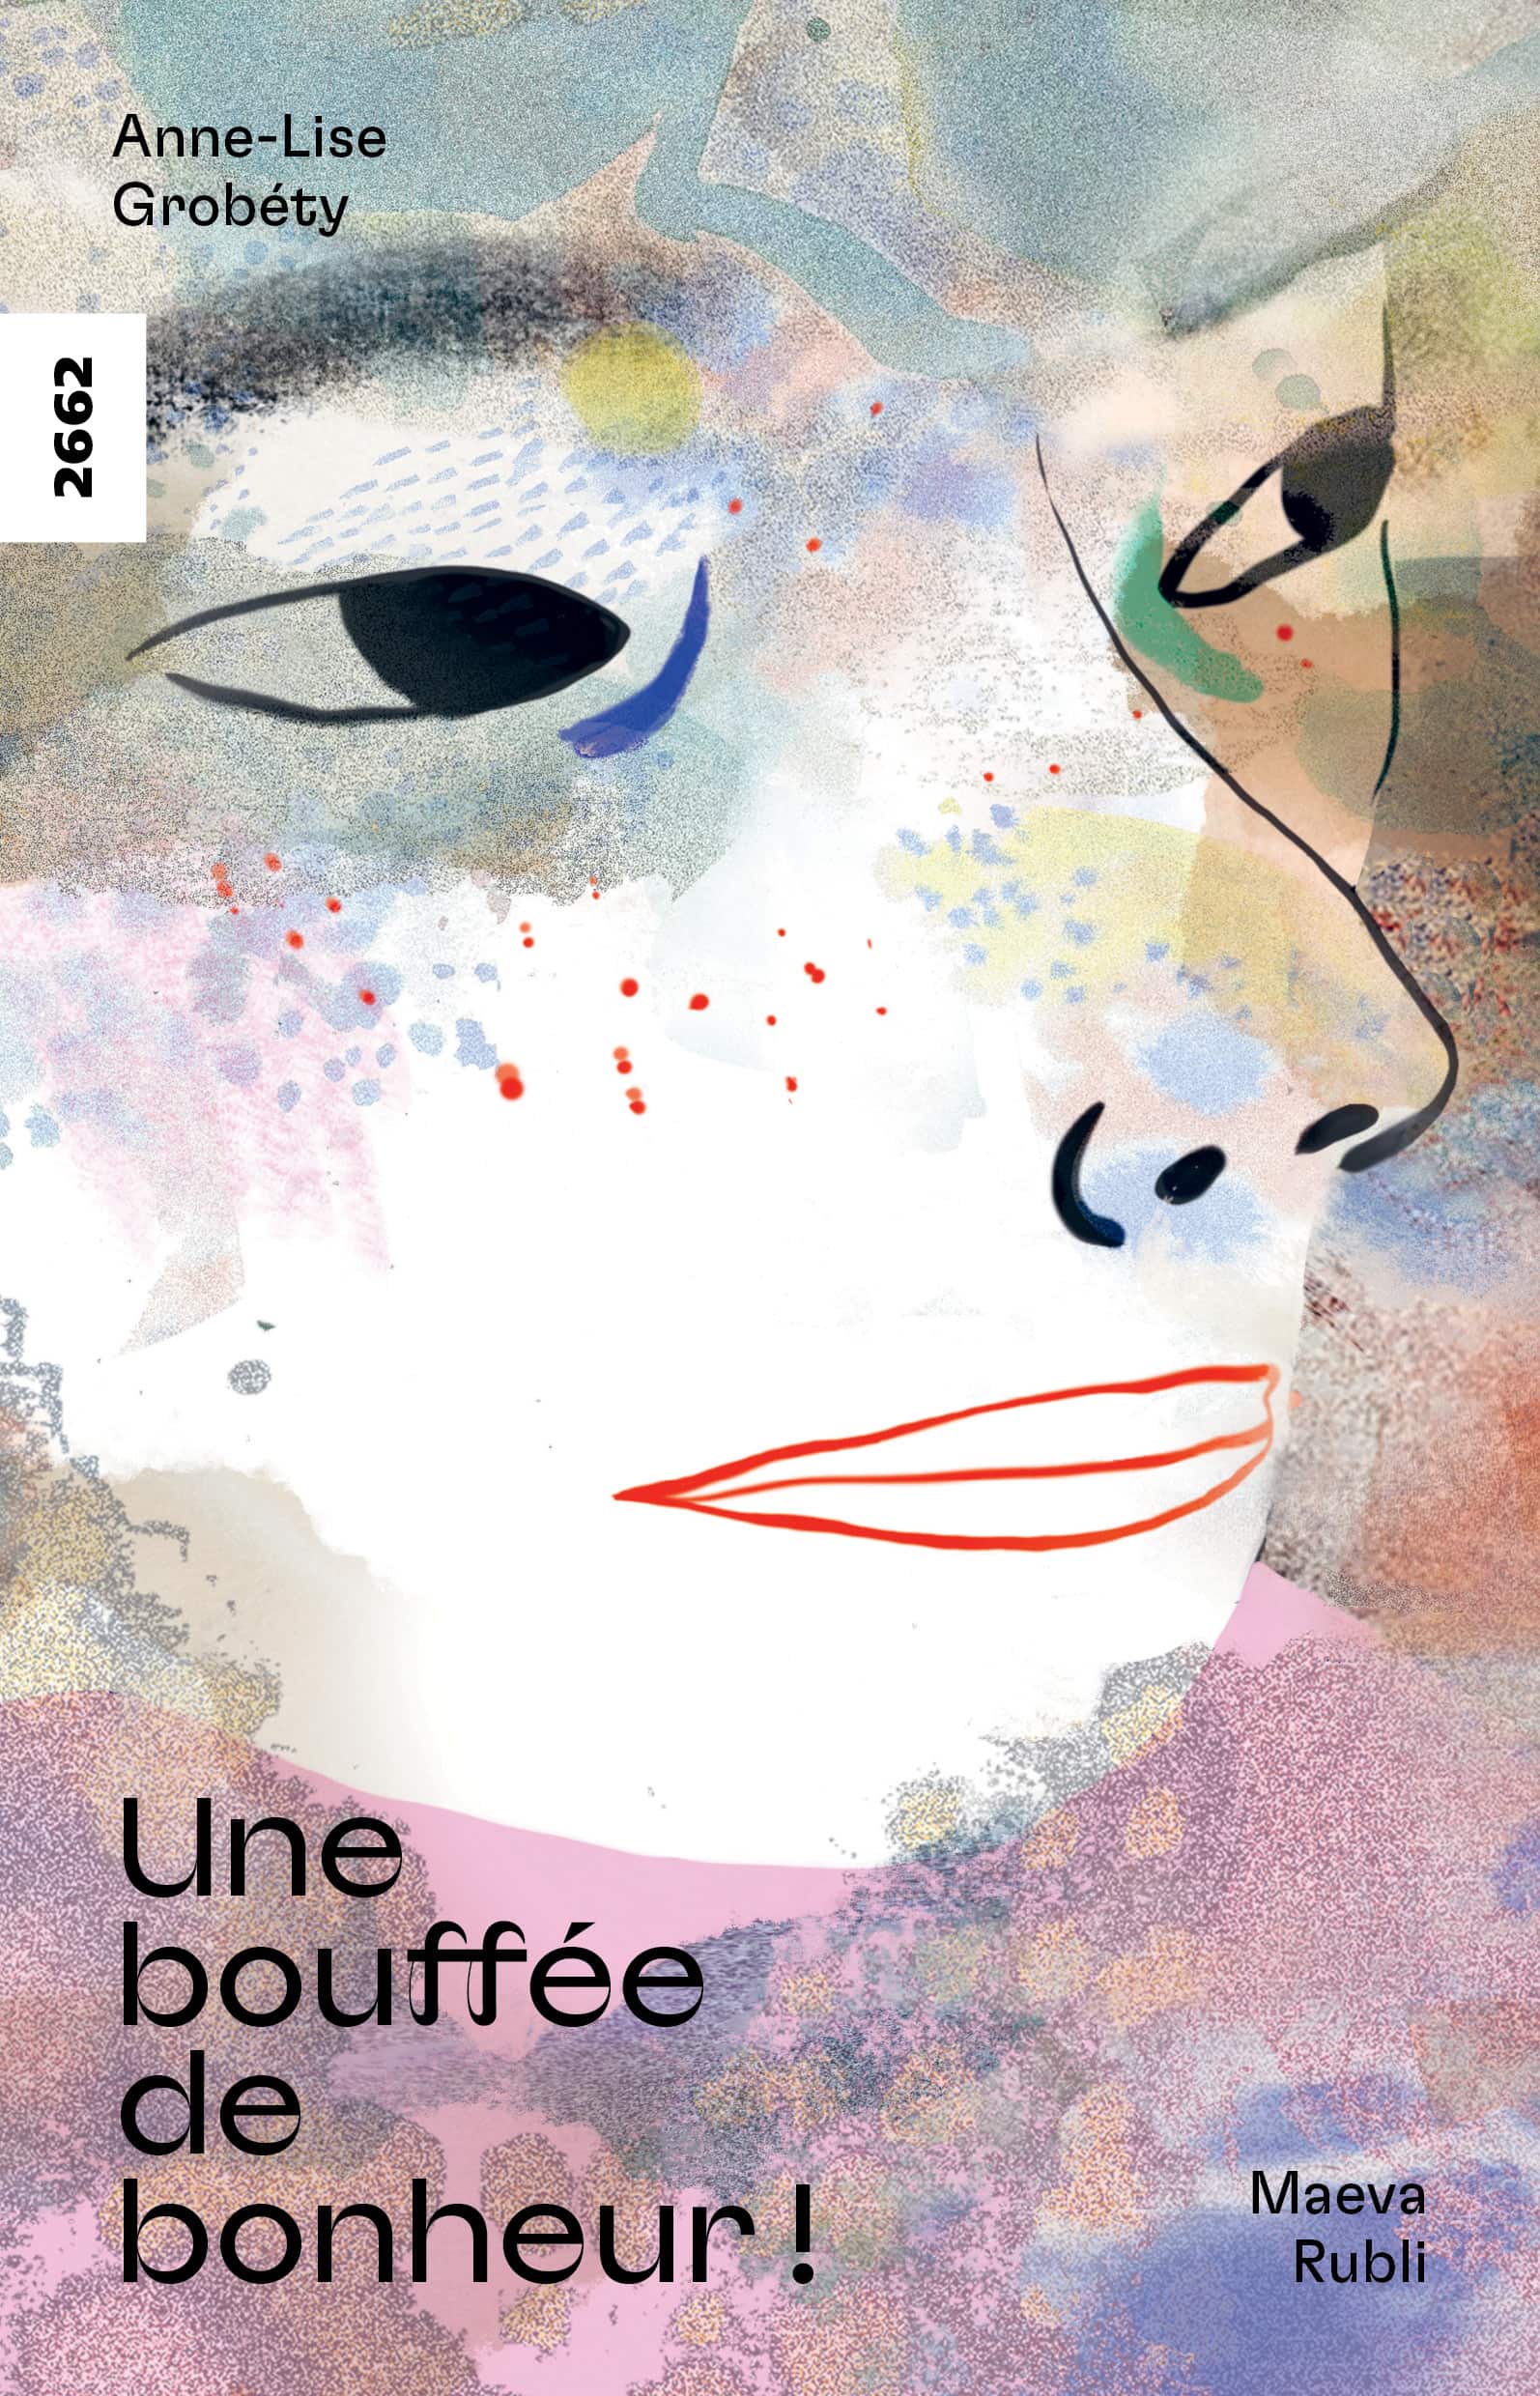 Une bouffée de bonheur!, un livre pour enfants de Anne-Lise Grobéty, illustré par Maeva Rubli, éditions de l'OSL, mobbing